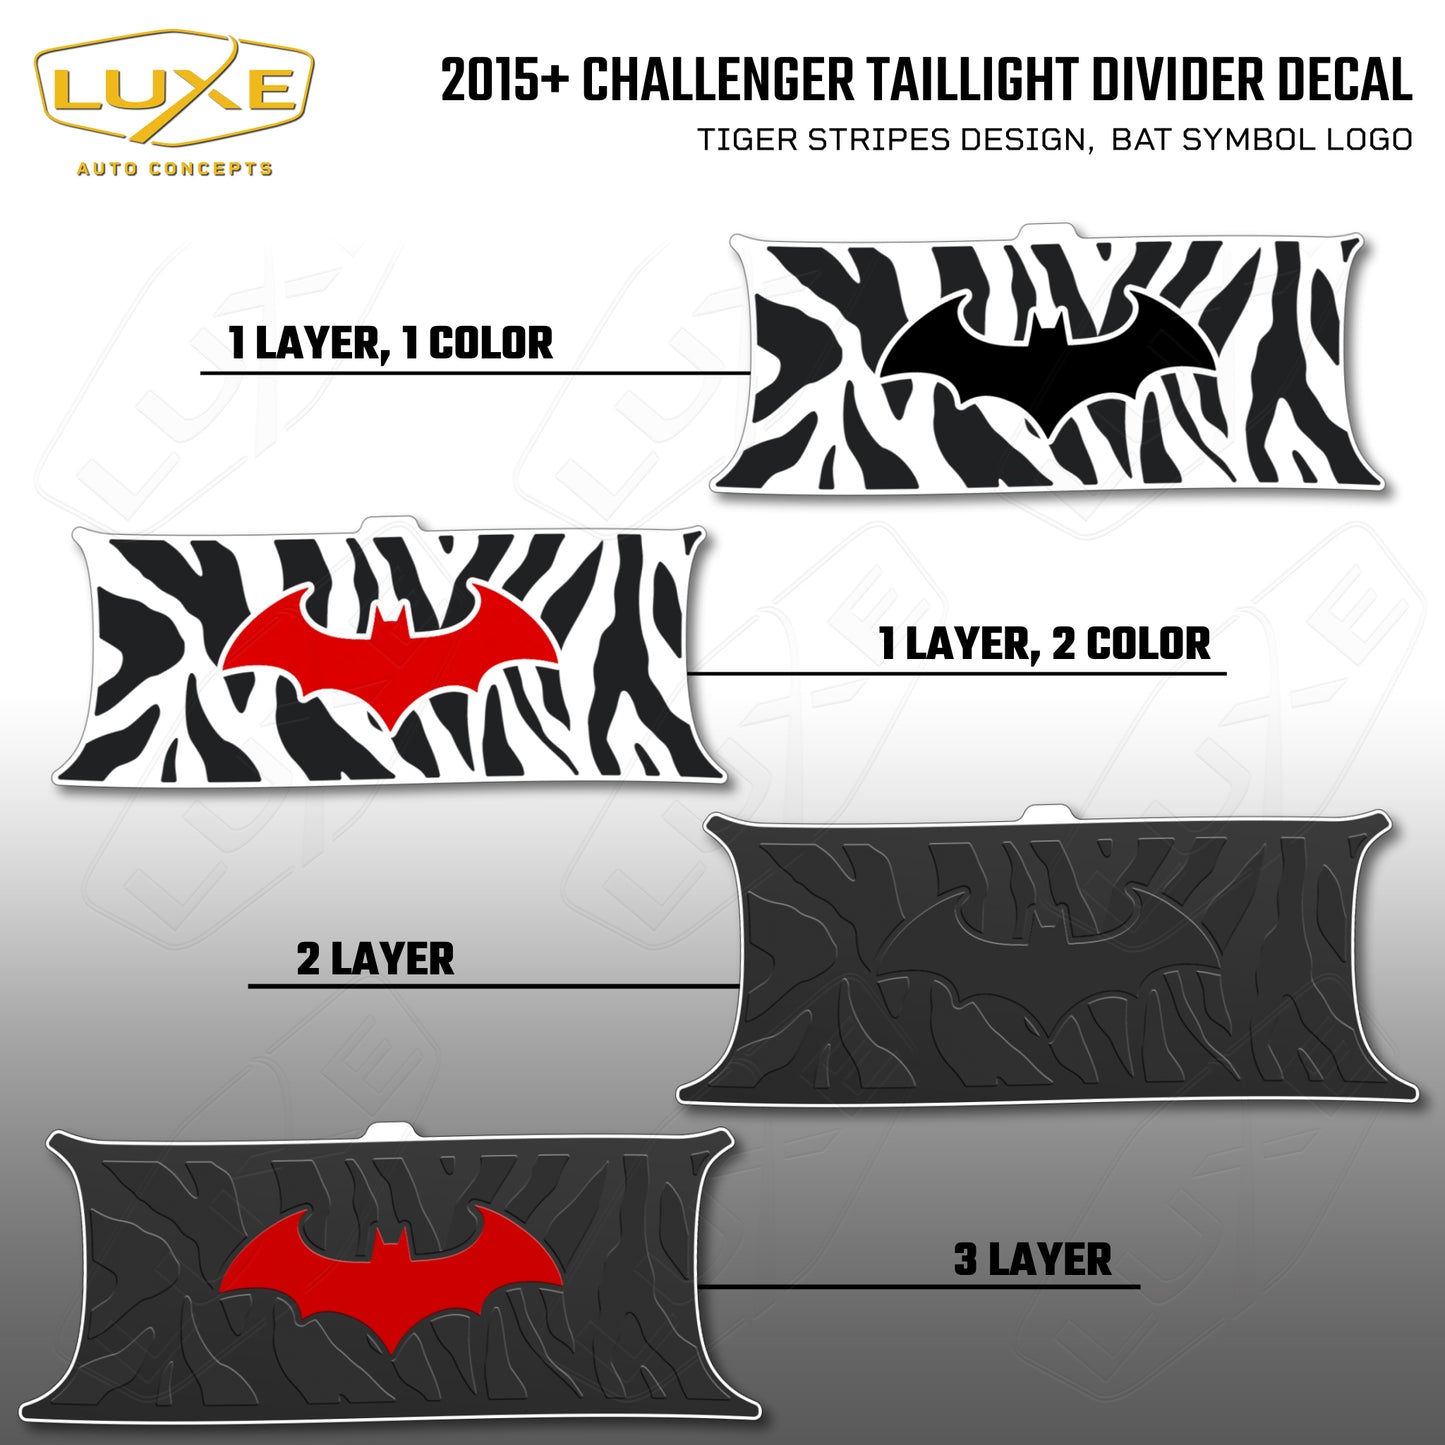 2015+ Challenger Taillight Center Divider Decal - Tiger Stripes Design, Bat Symbol